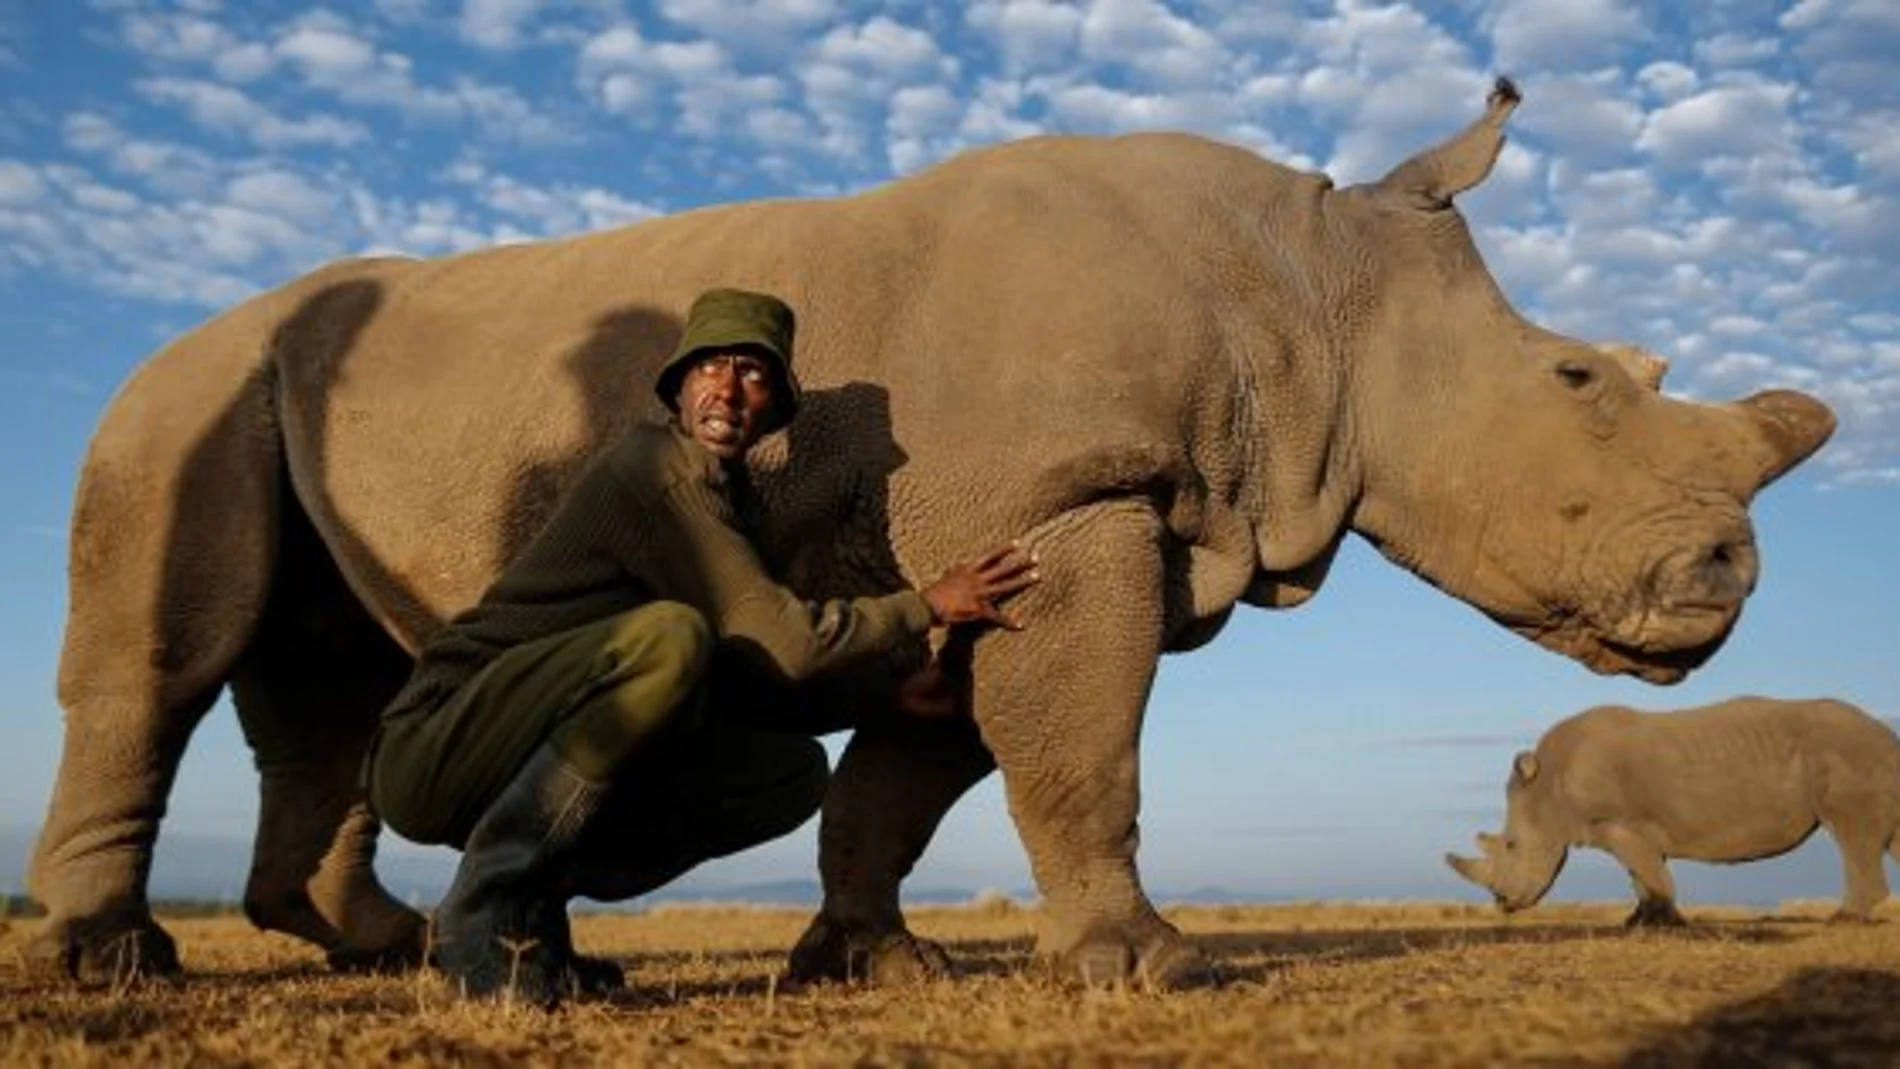 El rinoceronte blanco se recuperó con éxito a finales del año pasado de una infección en su pata derecha, pero a finales de febrero se descubrió que había recaído